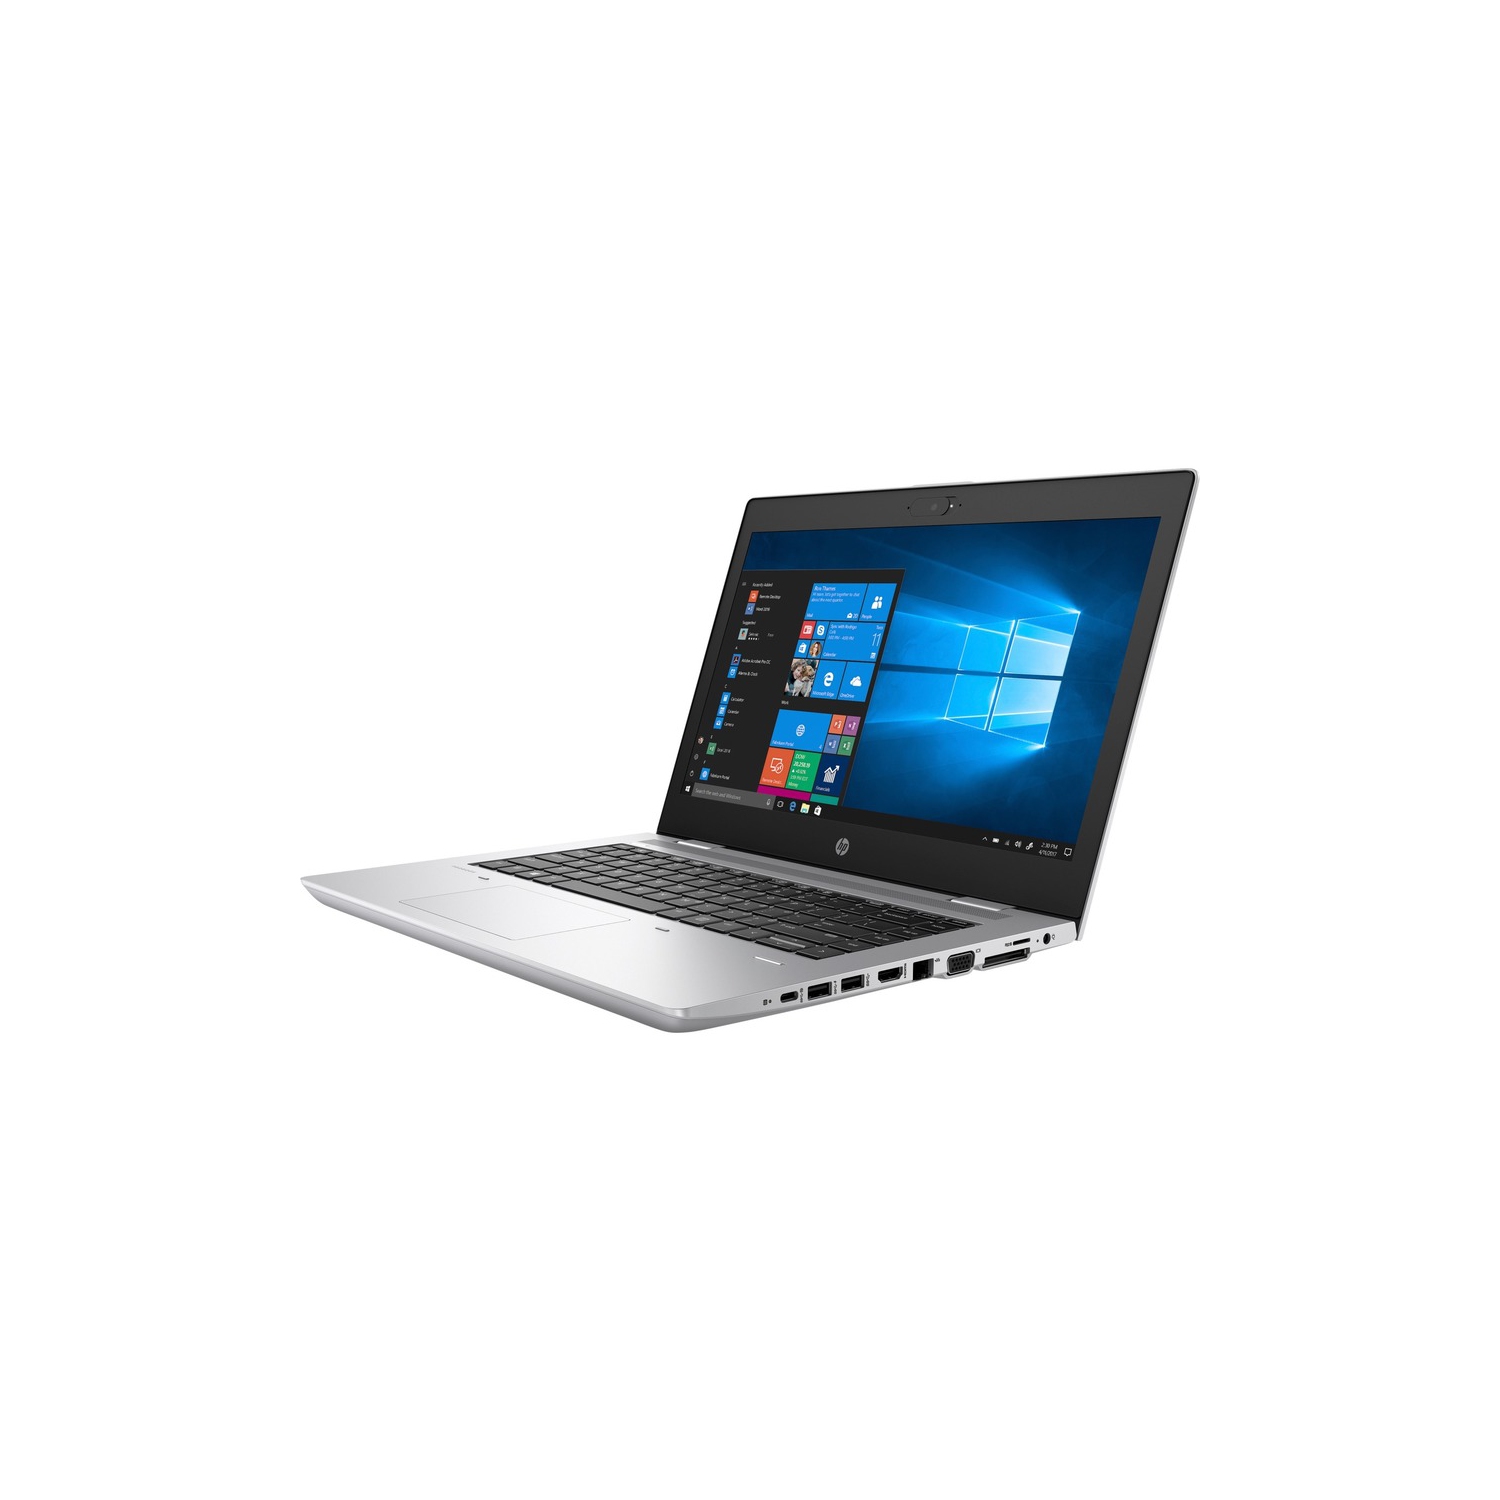 Refurbished (Good) - HP ProBook 640 G4 14" Notebook Intel i5-8350U 8 GB DDR4 256 GB NVMe Windows 10 Pro 64-bit